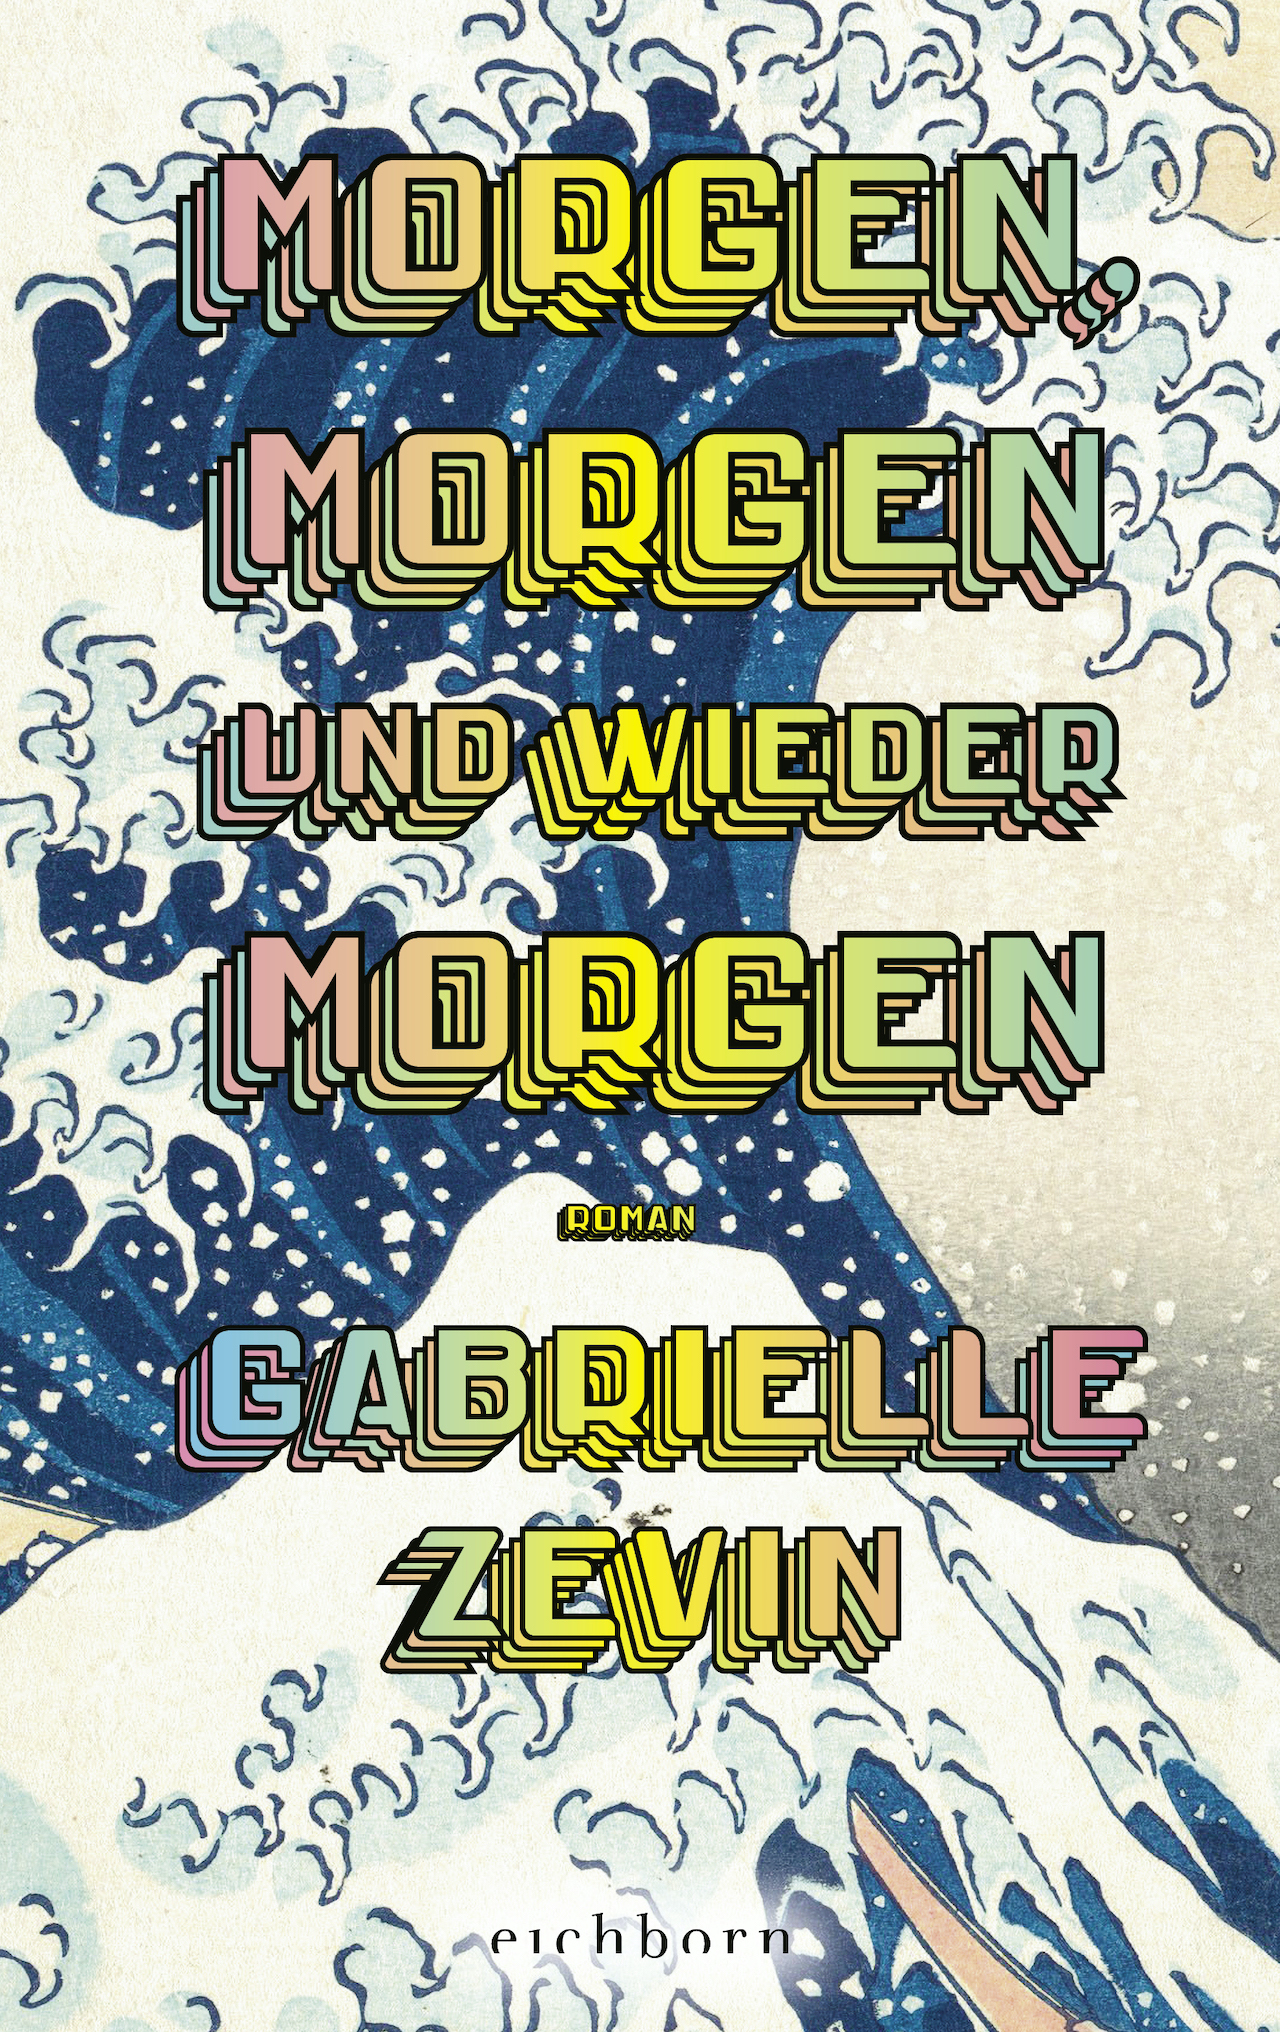 Cover von "Morgen, morgen, und wieder morgen" von Gabrielle Zevin, Die große Welle von Kanagawa im Hintergrund